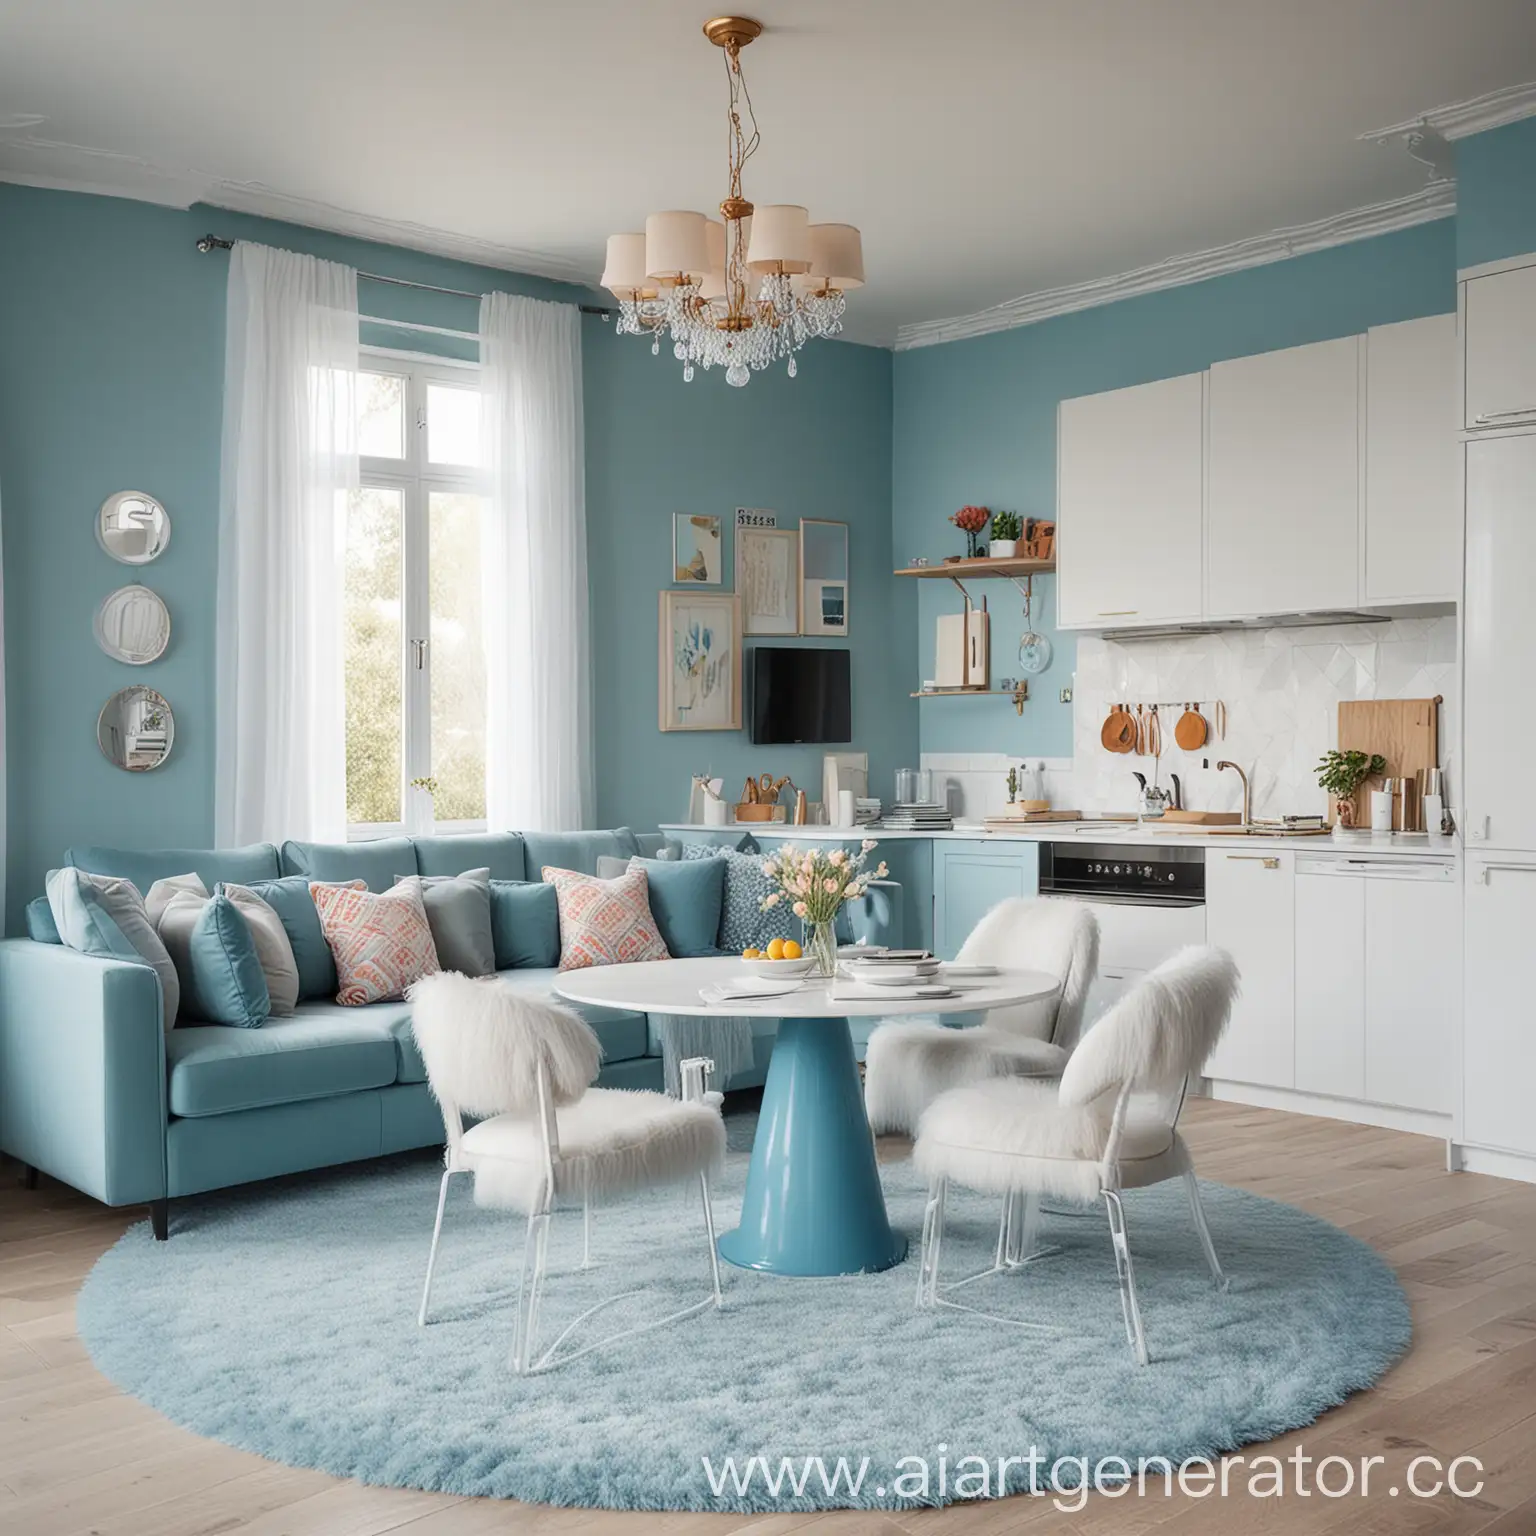 Современная кухня, яркие цвета, тюль, студия, круглый стол, мягкие стулья, угловая перспектива, синий цвет, мягкий белый коврик, торшер, диван